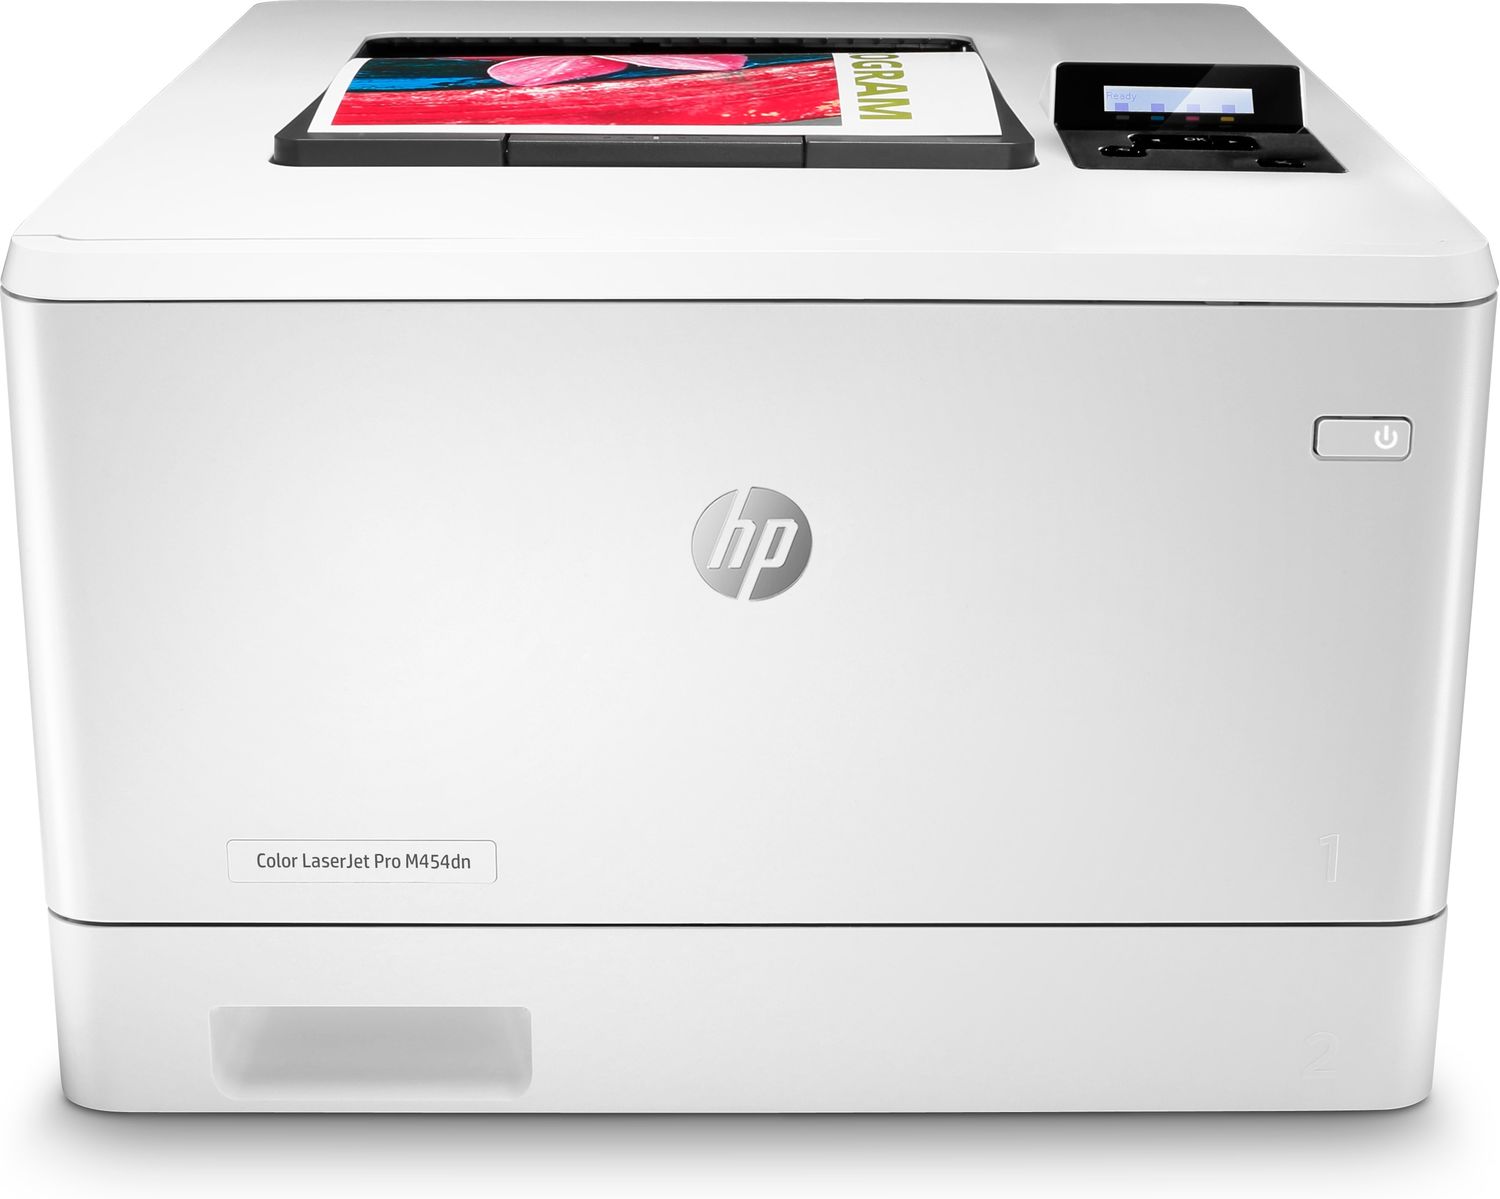 HP LaserJet Pro M255dw - Imprimante Laser Couleur A4 (7KW64A)